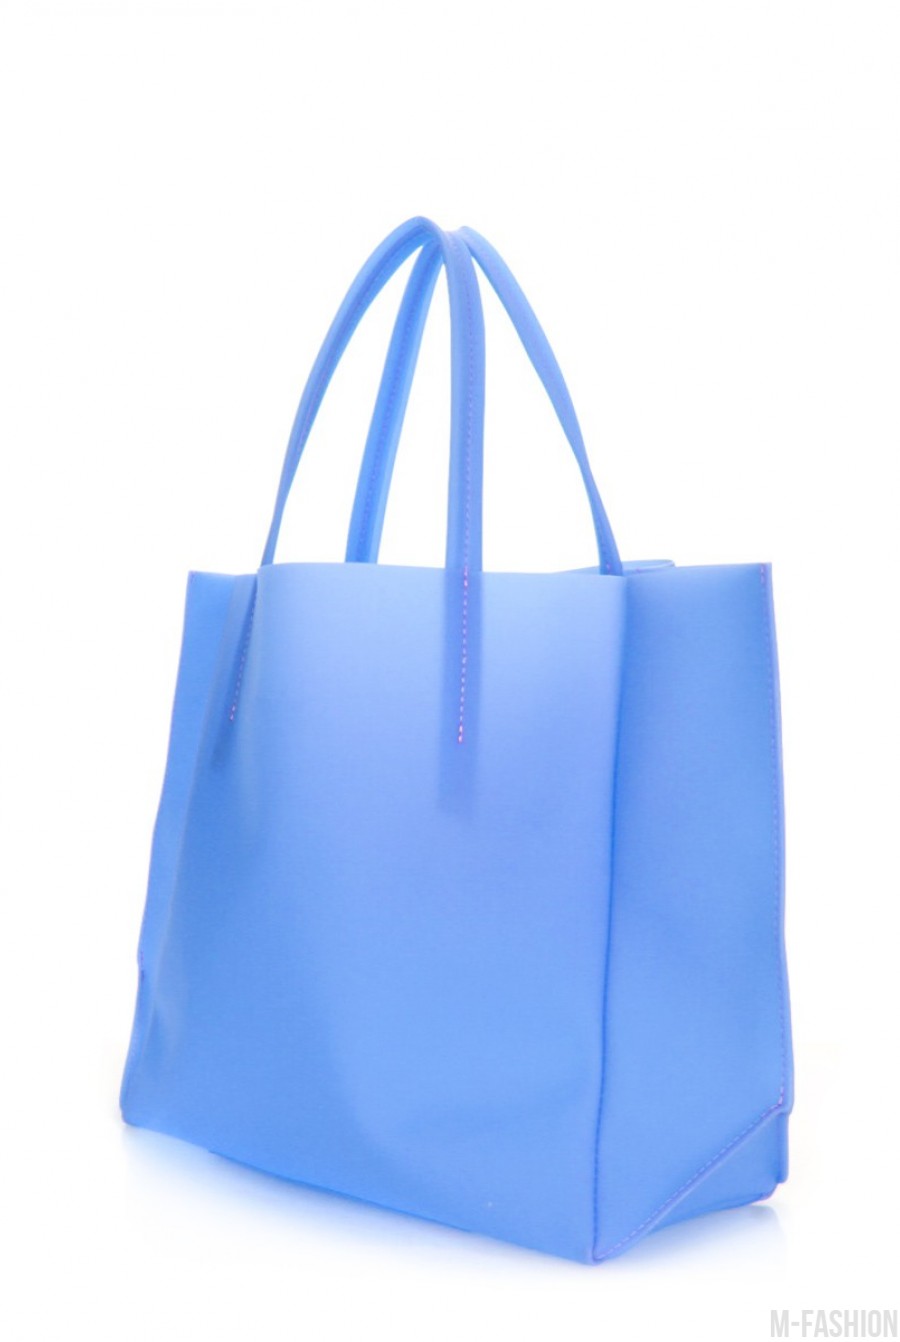 Пластиковая сумка-шоппинг Gossip голубая- Фото 2